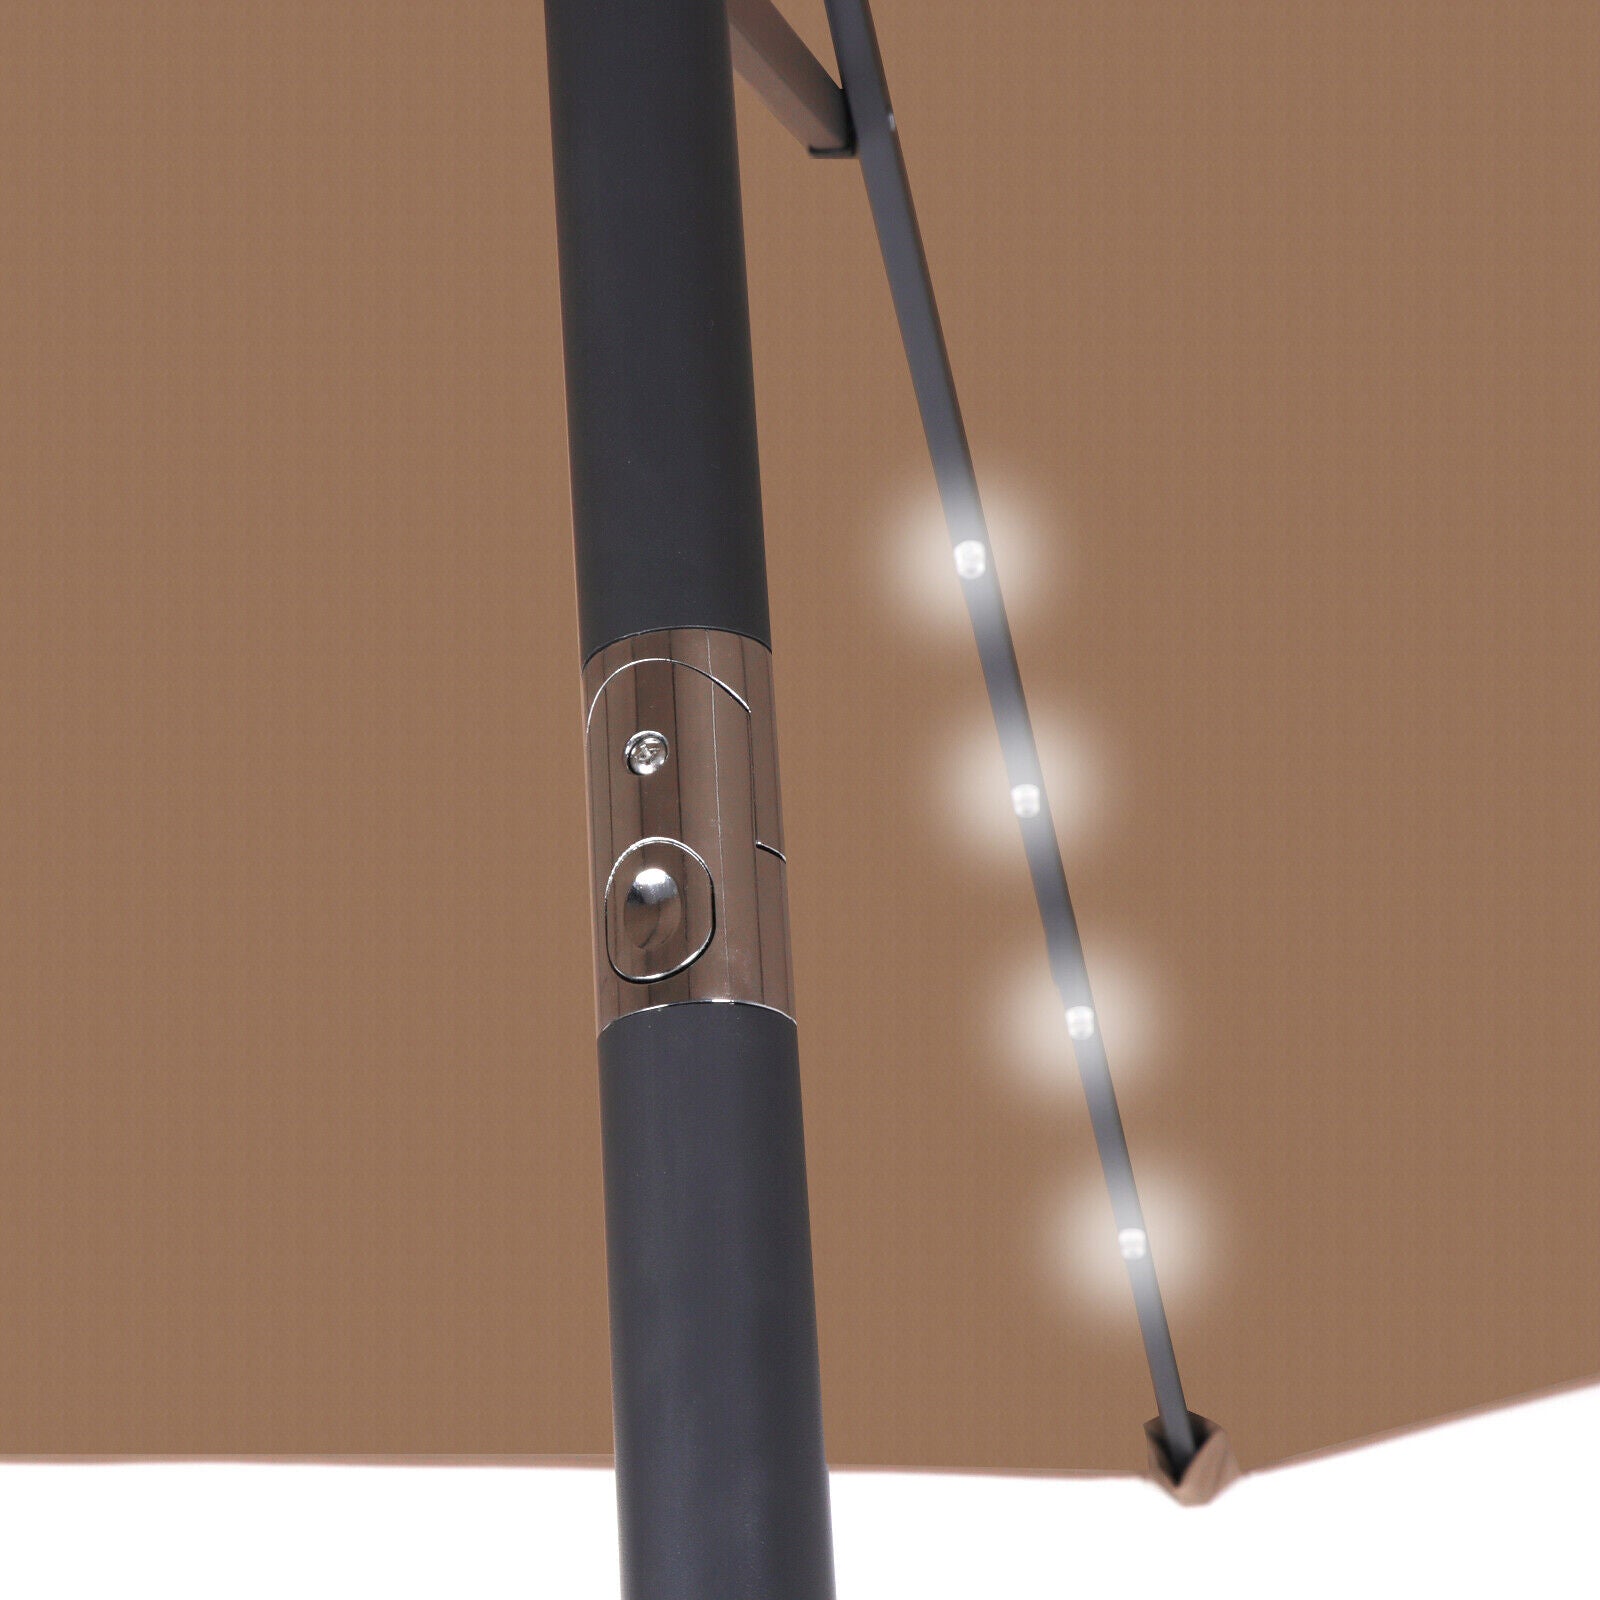 10FT Patio Solar Umbrella LED Patio Market Steel Tilt And Crank Outdoor Tan